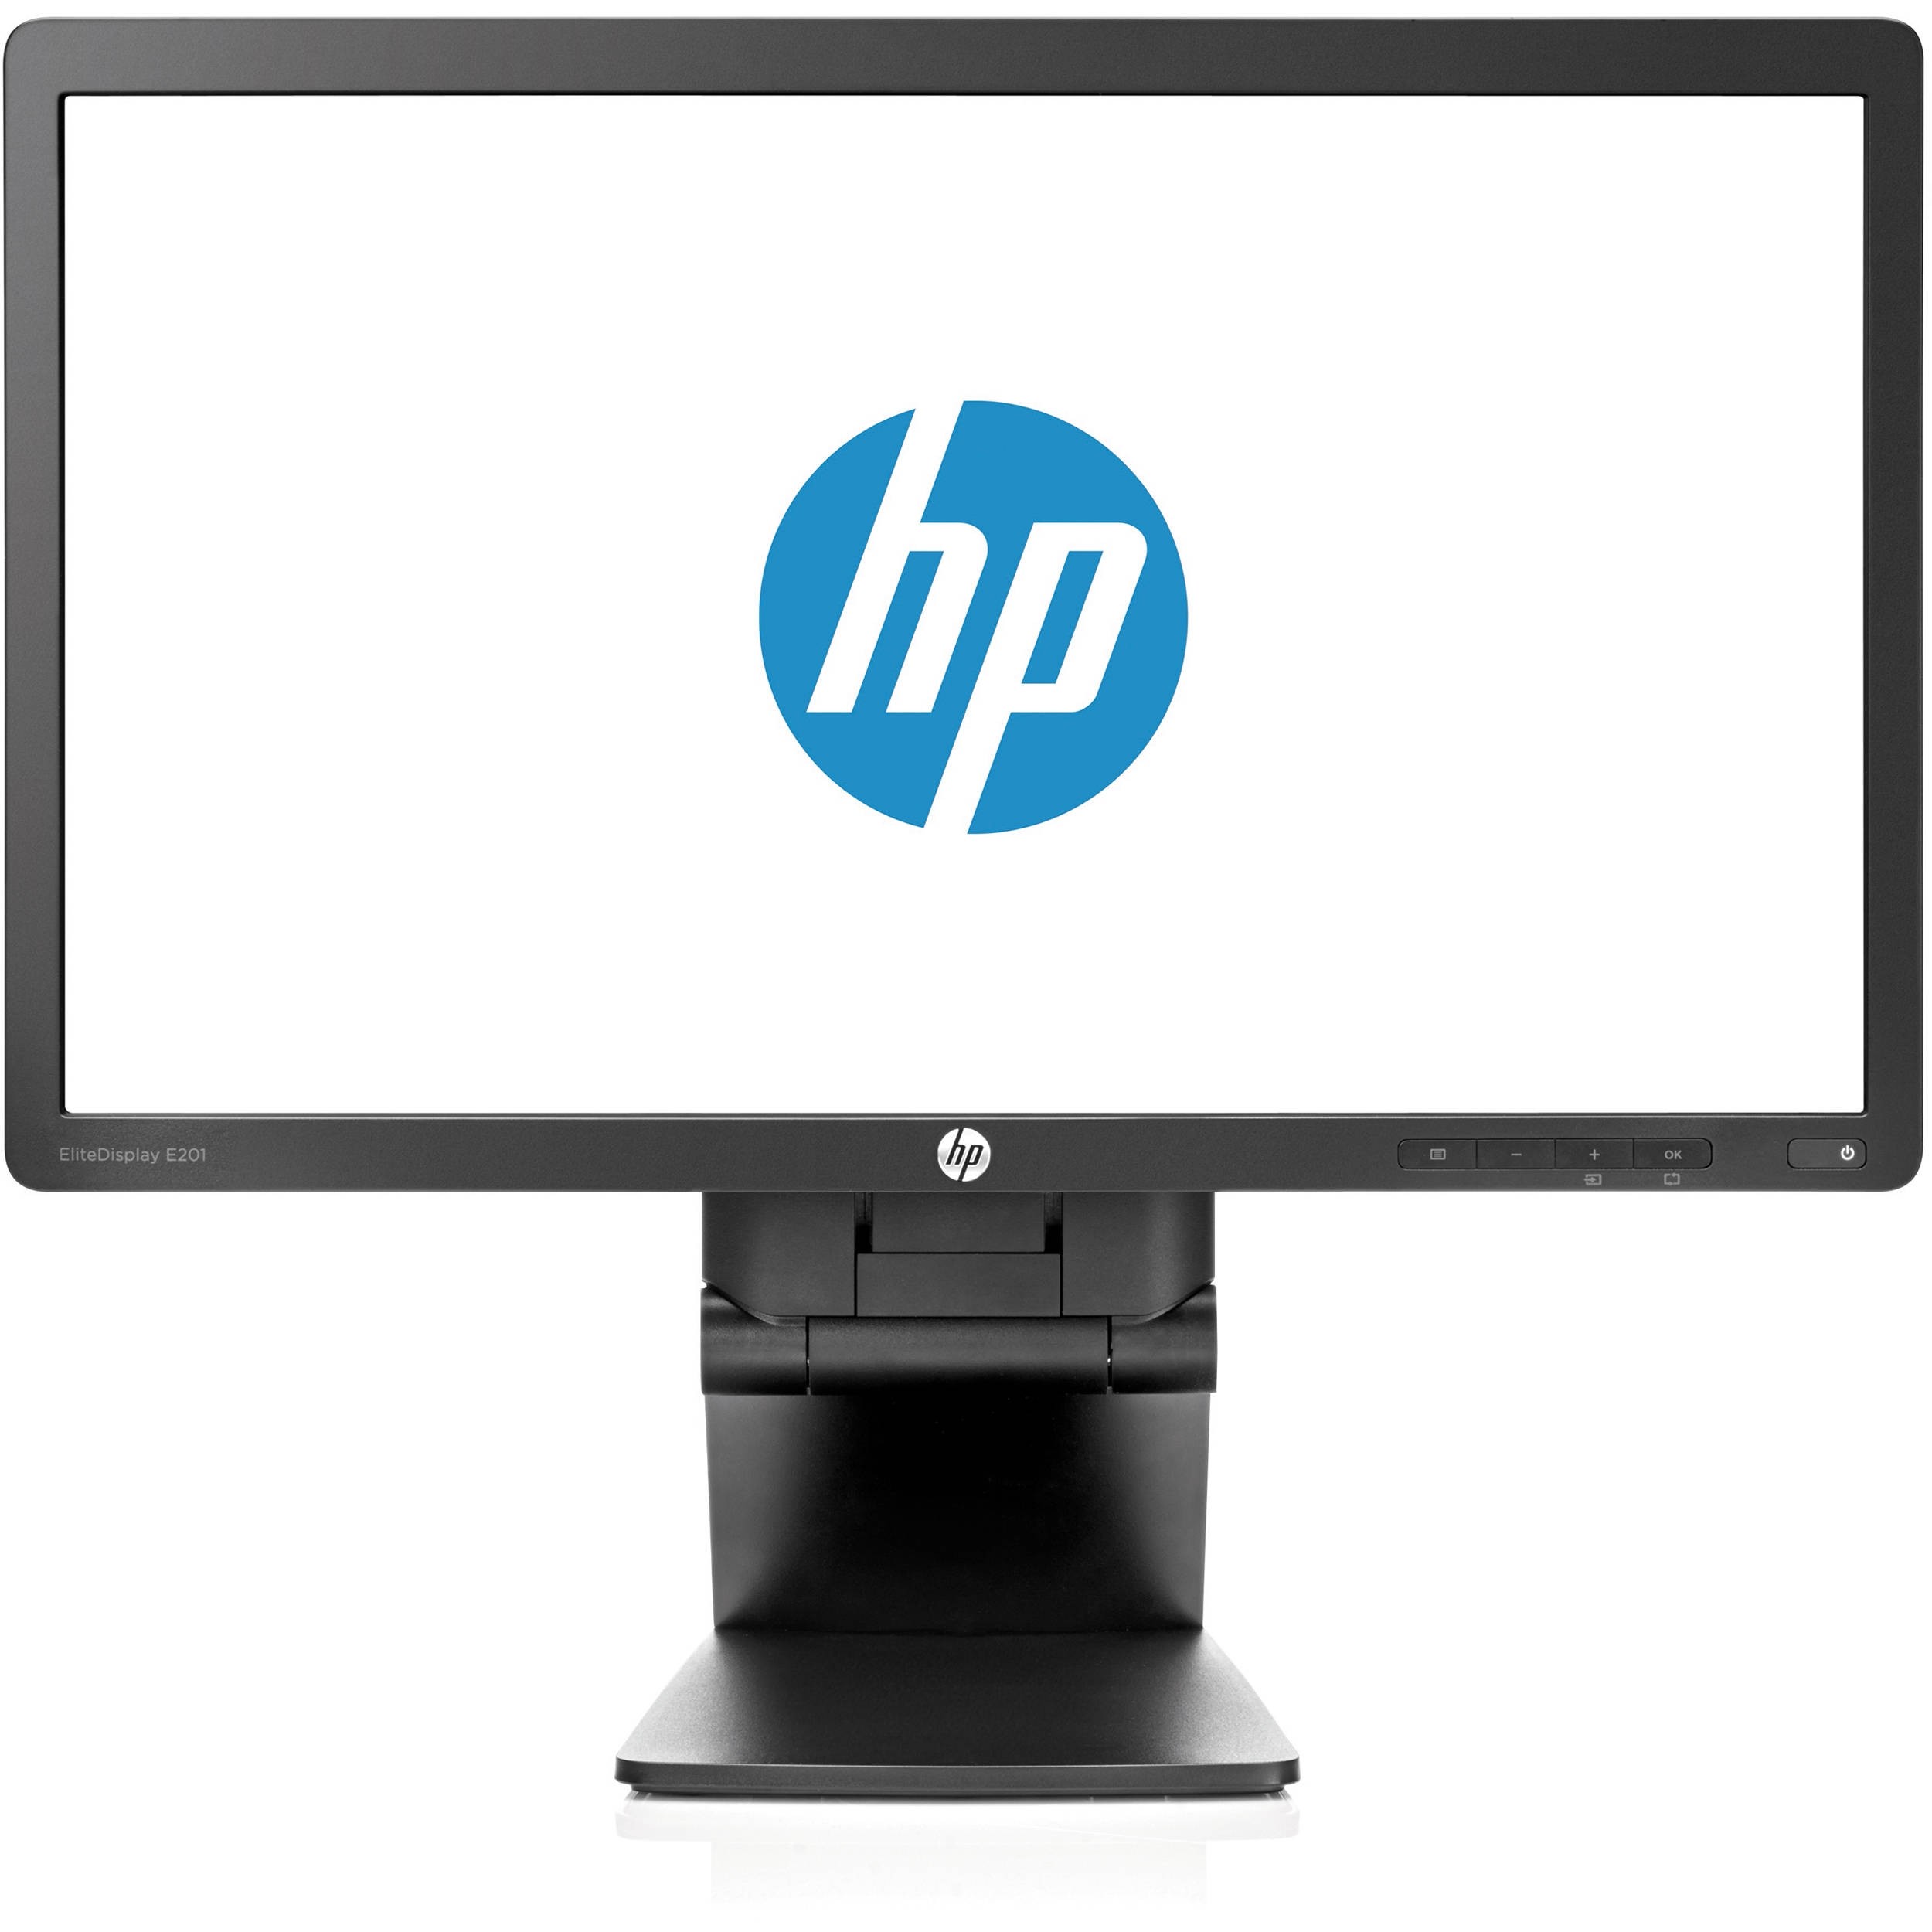 HP EliteDisplay E201 20" HD+ (1600x900) TN LED Monitor